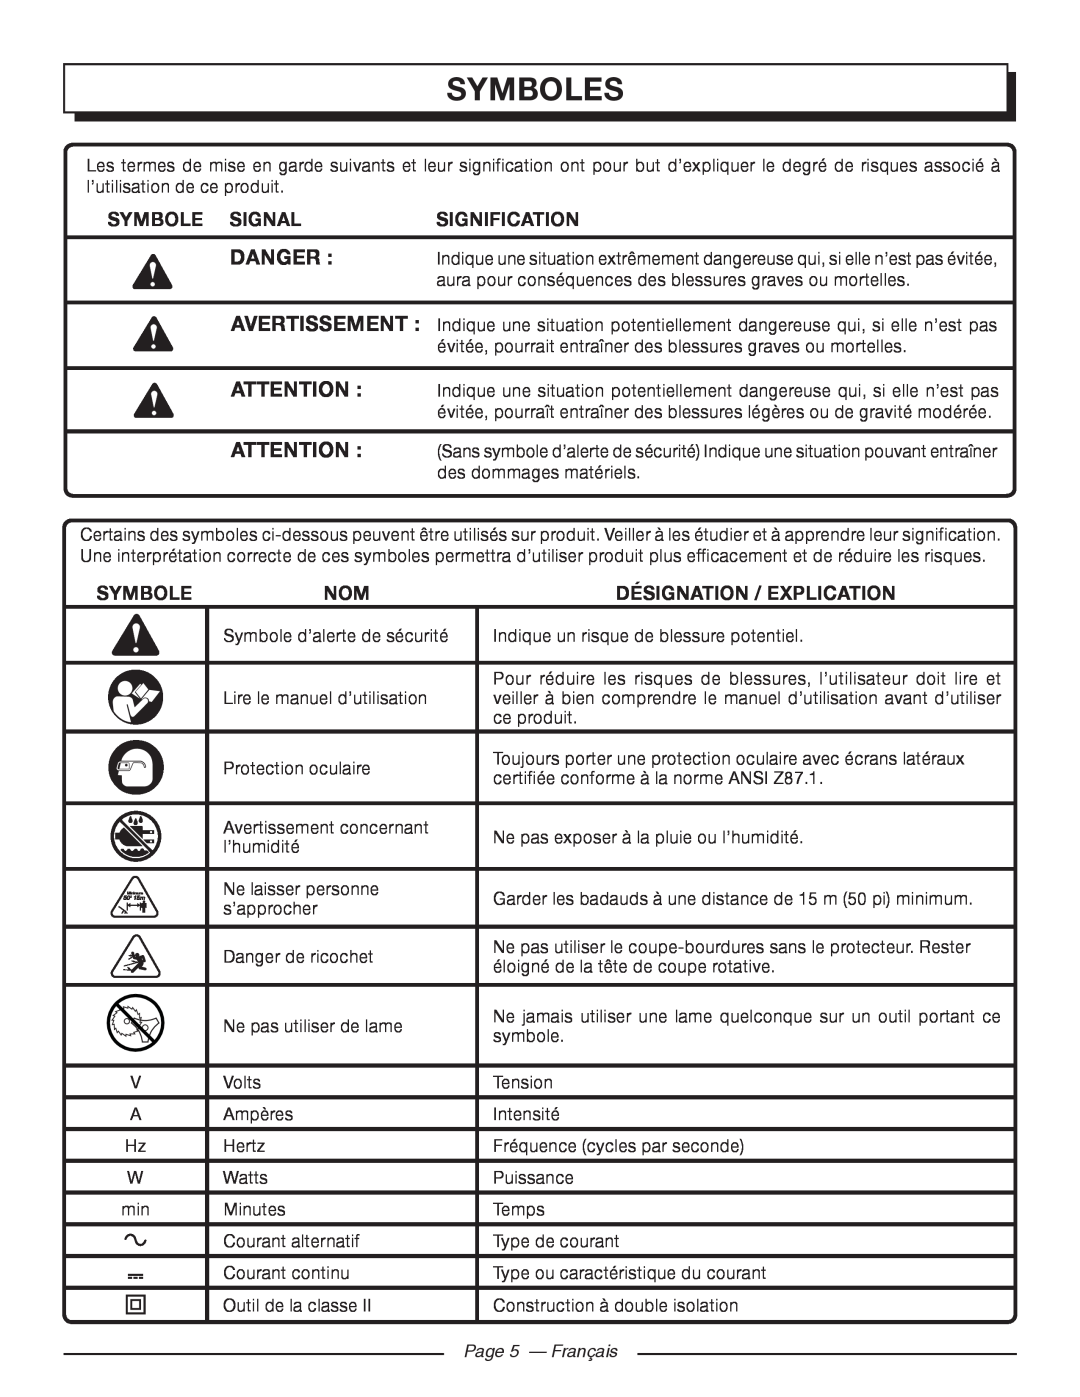 Homelite UT41112 Symboles, Danger , Symbole Signal, Signification, Désignation / Explication, Page 5 - Français 